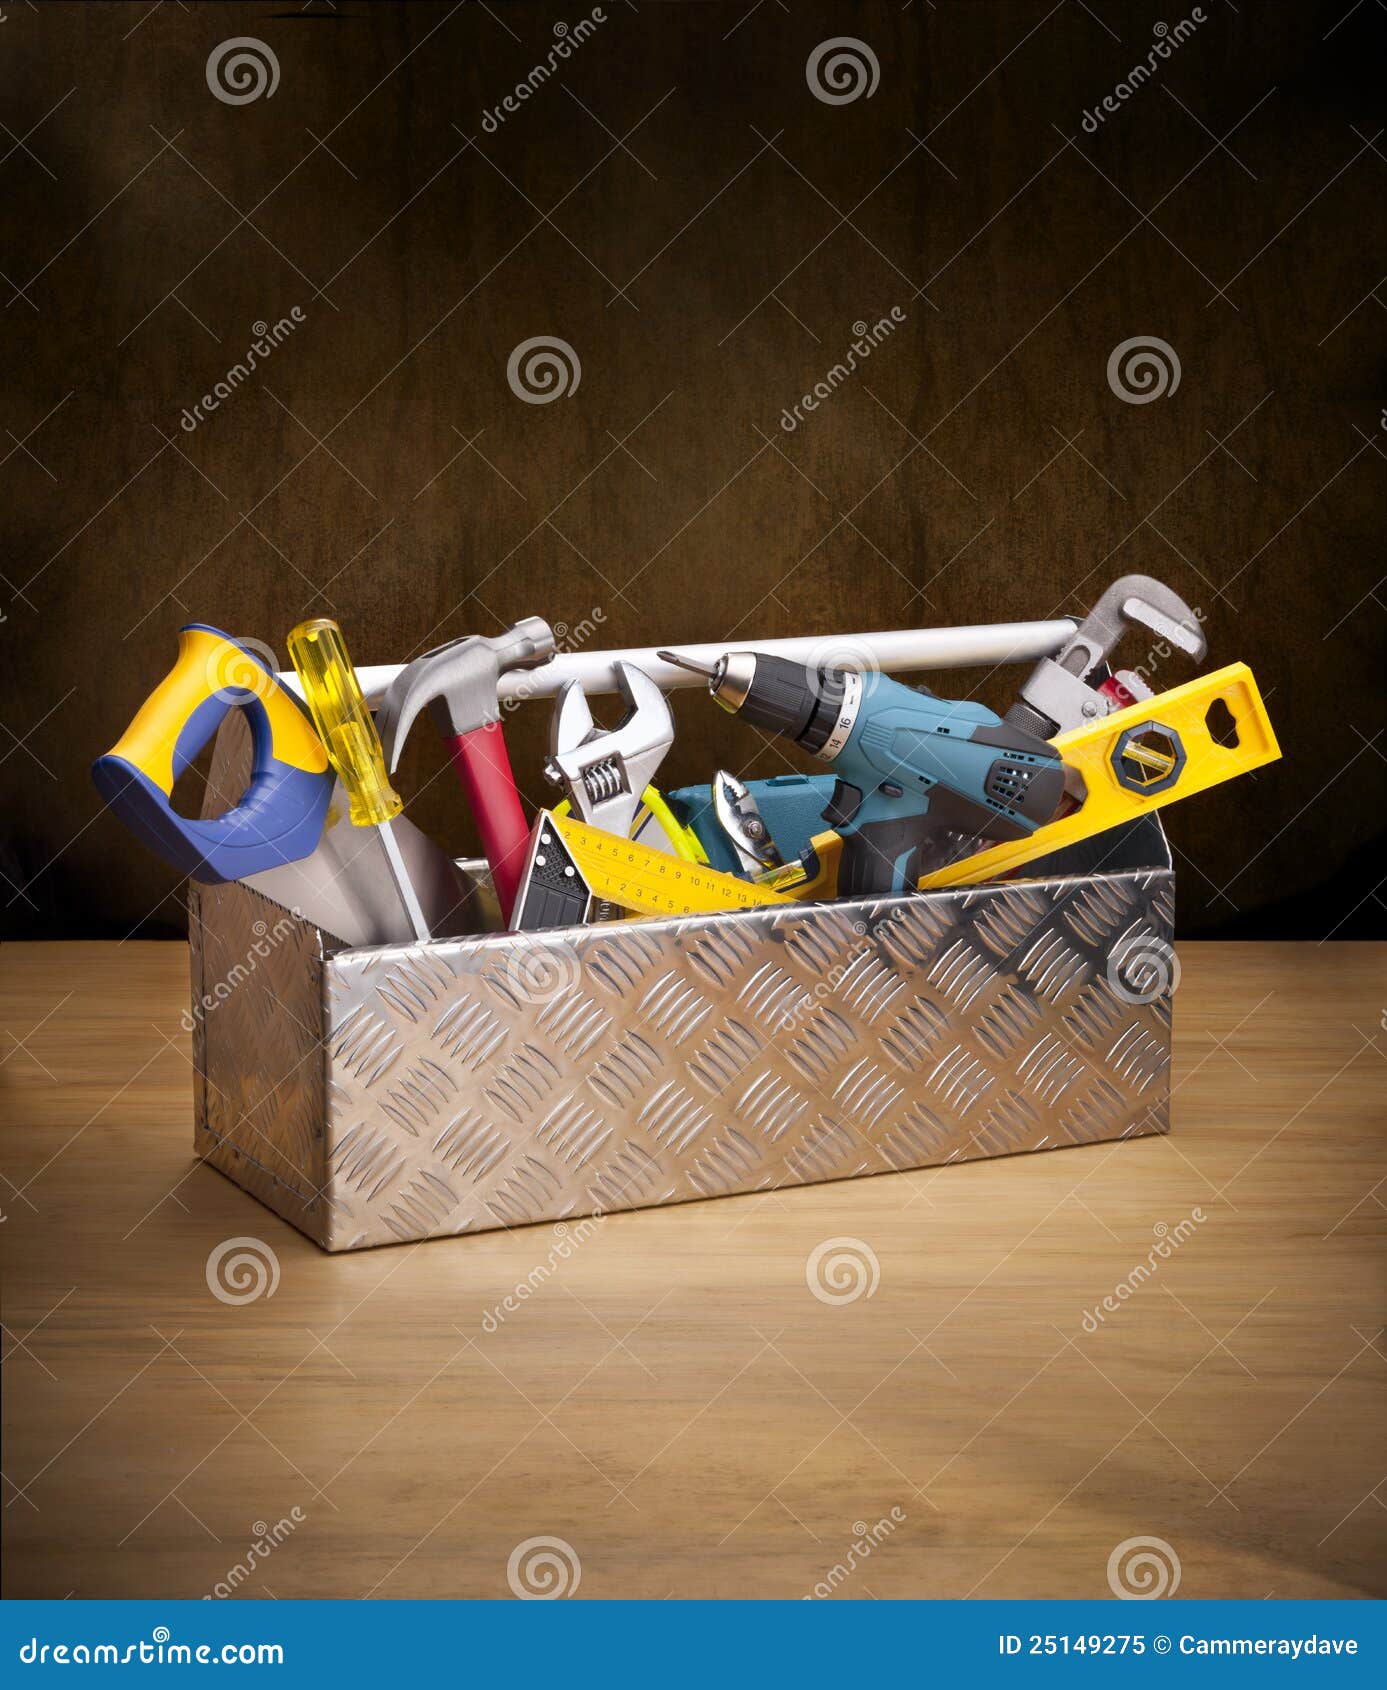 toolbox tools toolkit wood box